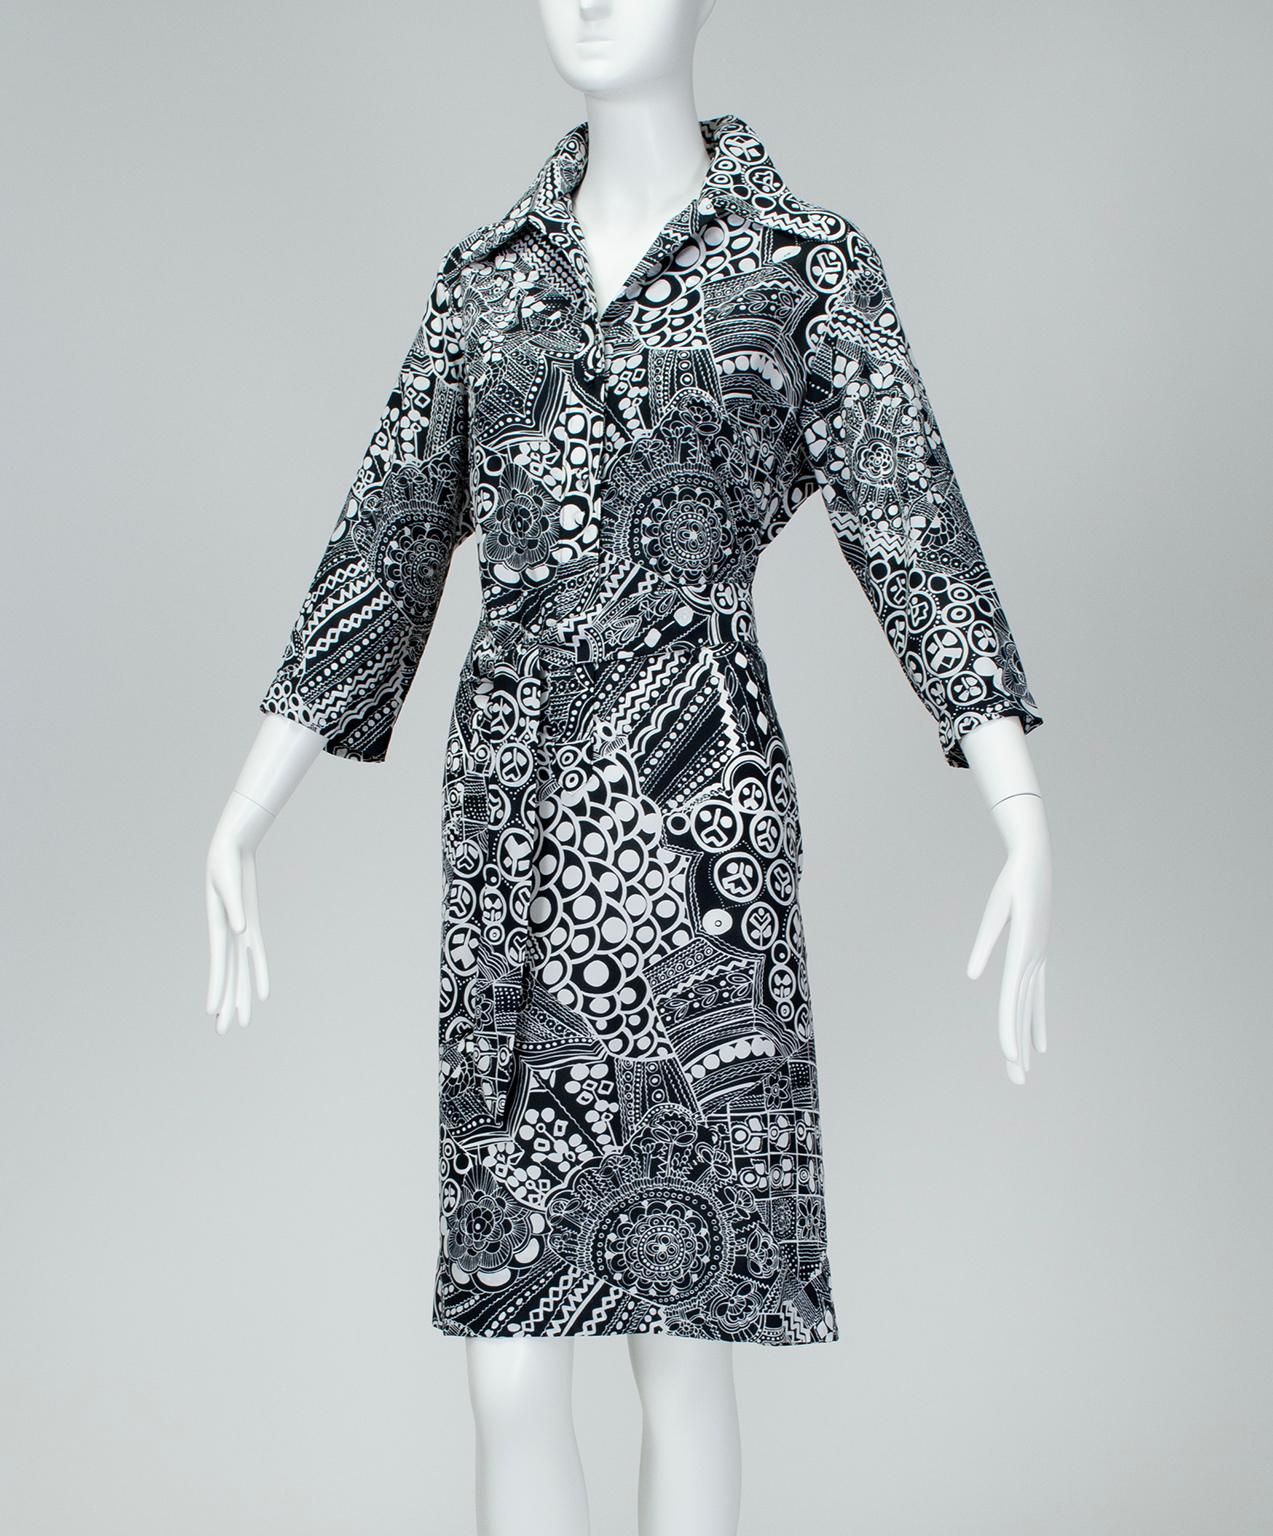 Der Print würde schon reichen, aber das Besondere an diesem Kleid von Lanvin ist der knitterfreie, leichte und waschmaschinenfeste Stoff. Oh, und er hat auch Taschen. Möglicherweise das Einzige, was Sie außer einer Zahnbürste in Ihrem nächsten